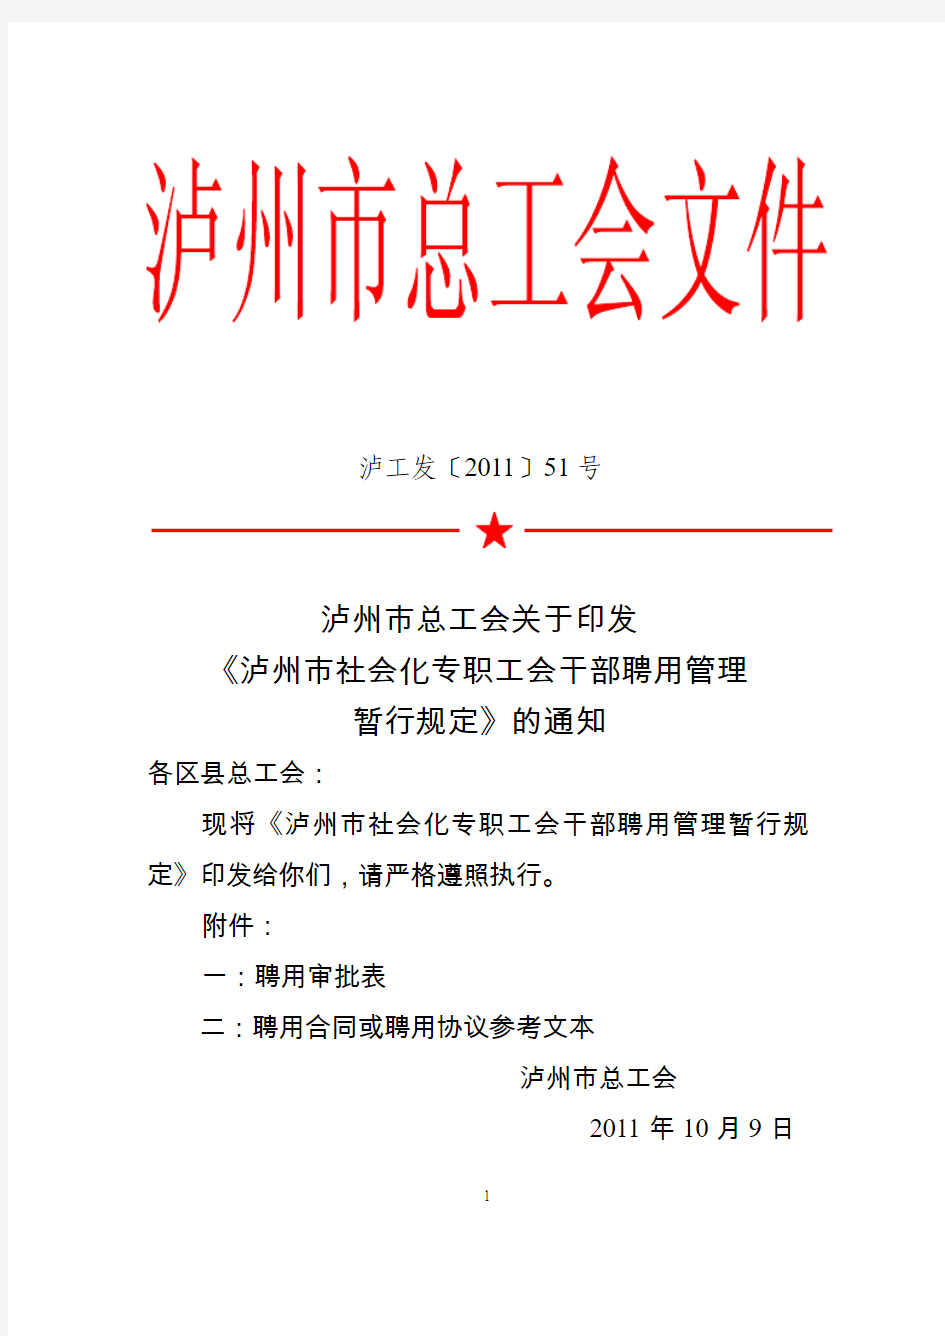 四川省总工会关于进一步推进聘用社会化专职工会干部工作